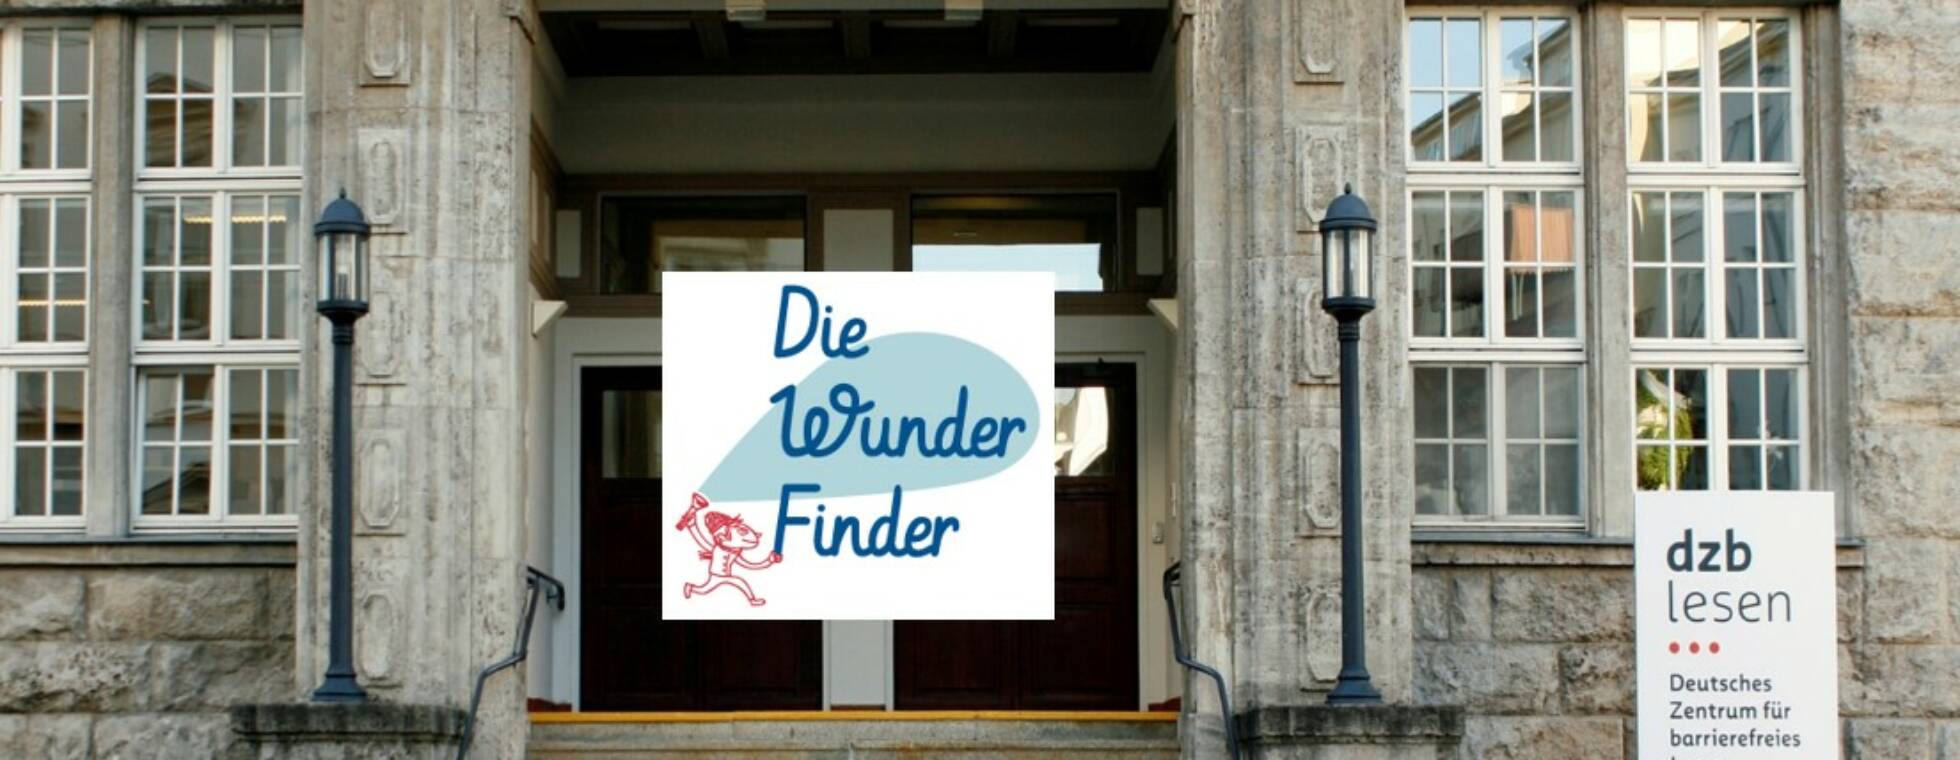 Ansicht des dzb lesen von der Gustav-Adolf-Straße aus mit dem Logo der Wunderfinder in der linken oberen Ecke